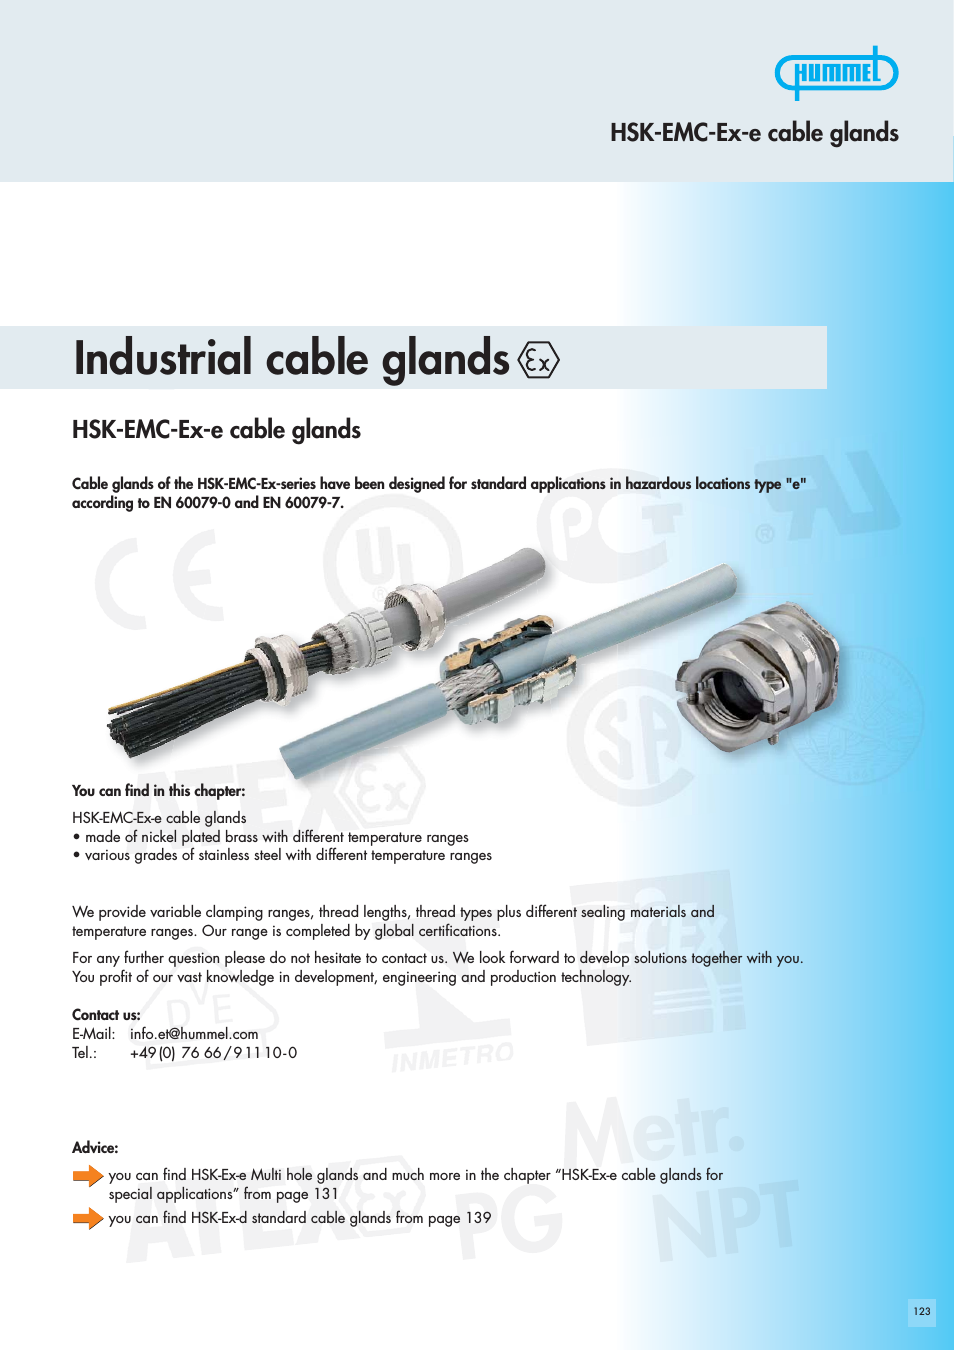 Hummel Cable Glands - EMC-Ex-e for Hazardous Areas